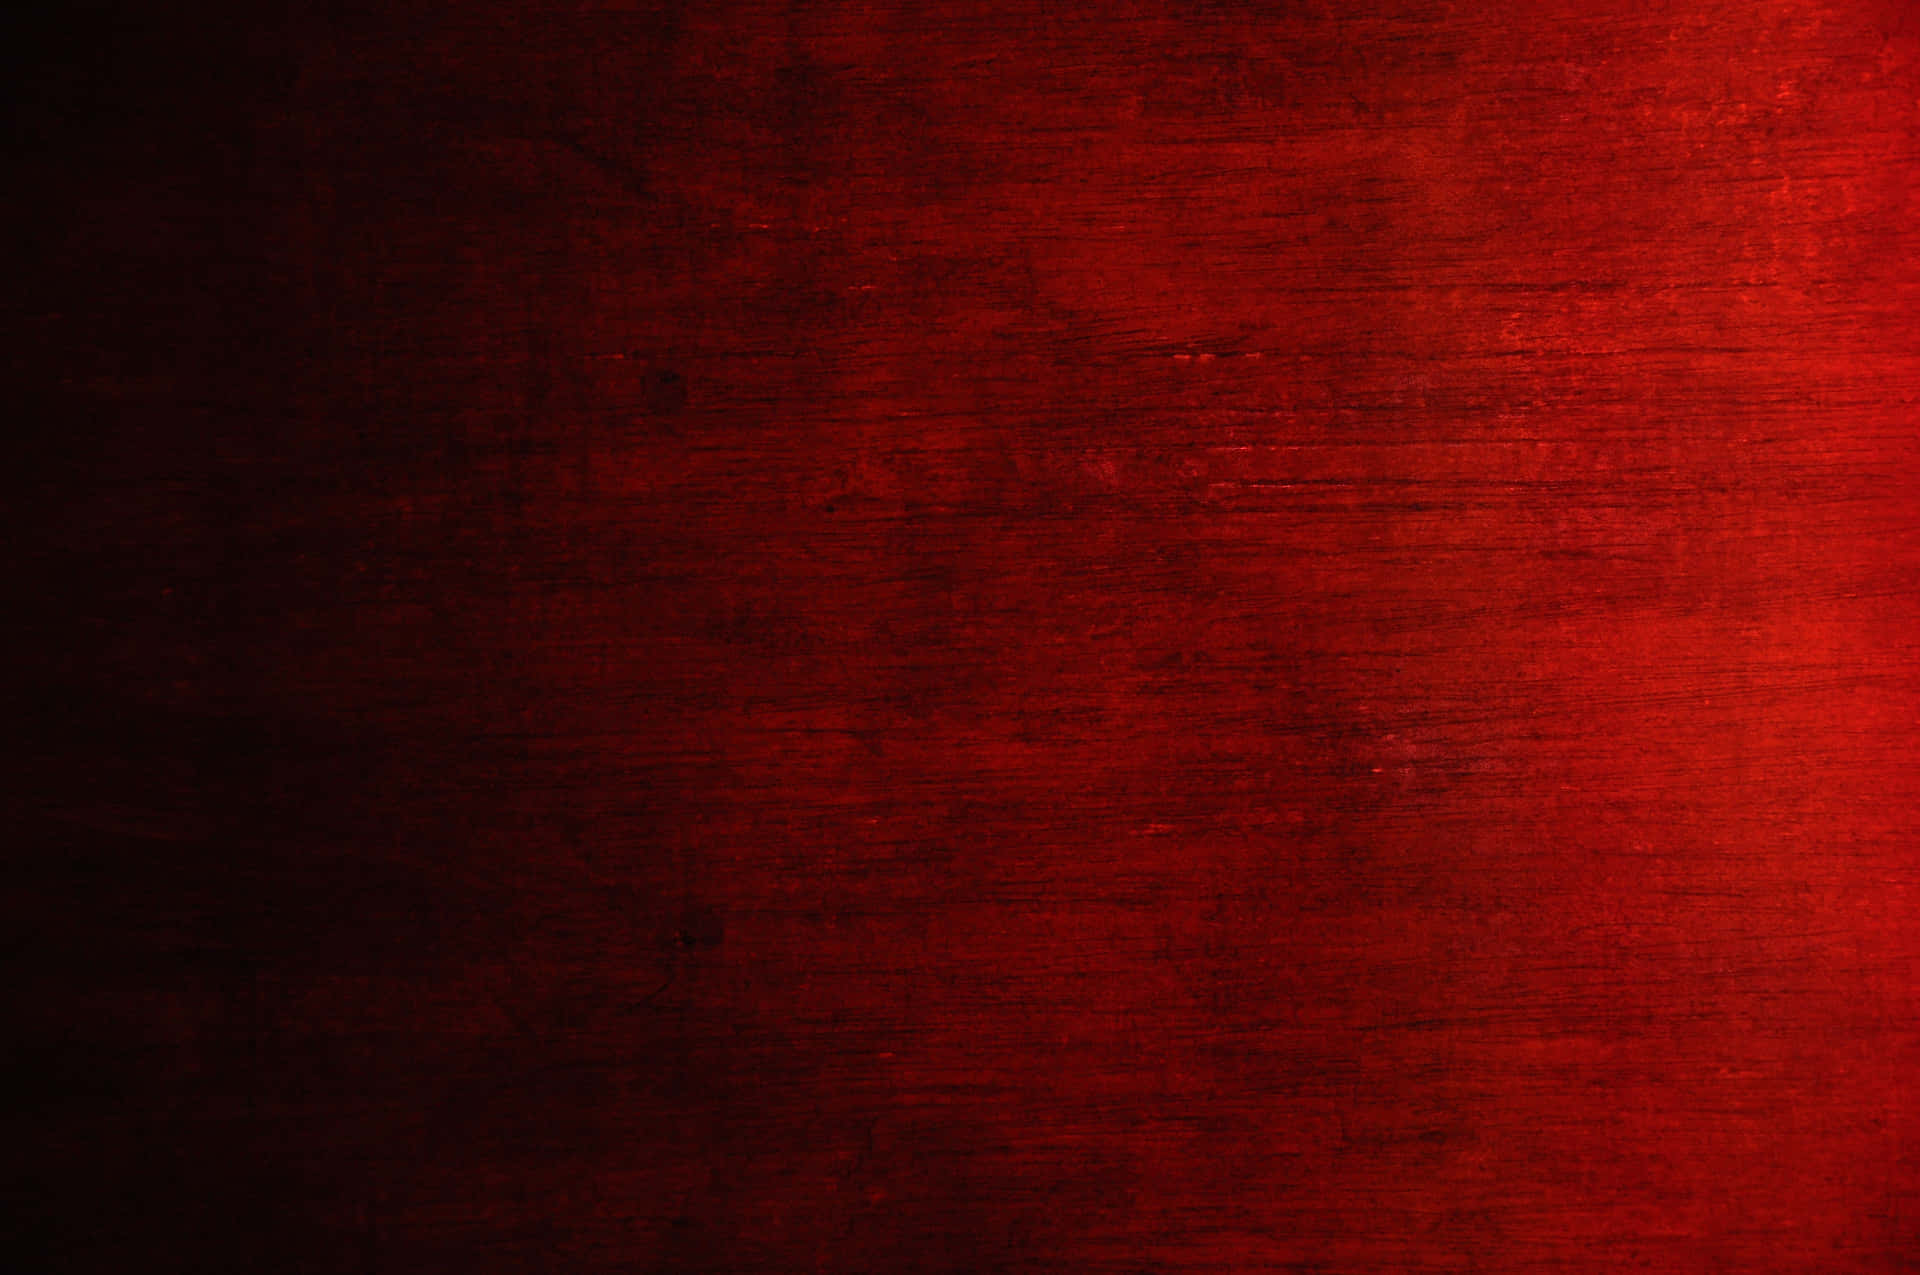 Imagende Textura Áspera De Color Rojo.